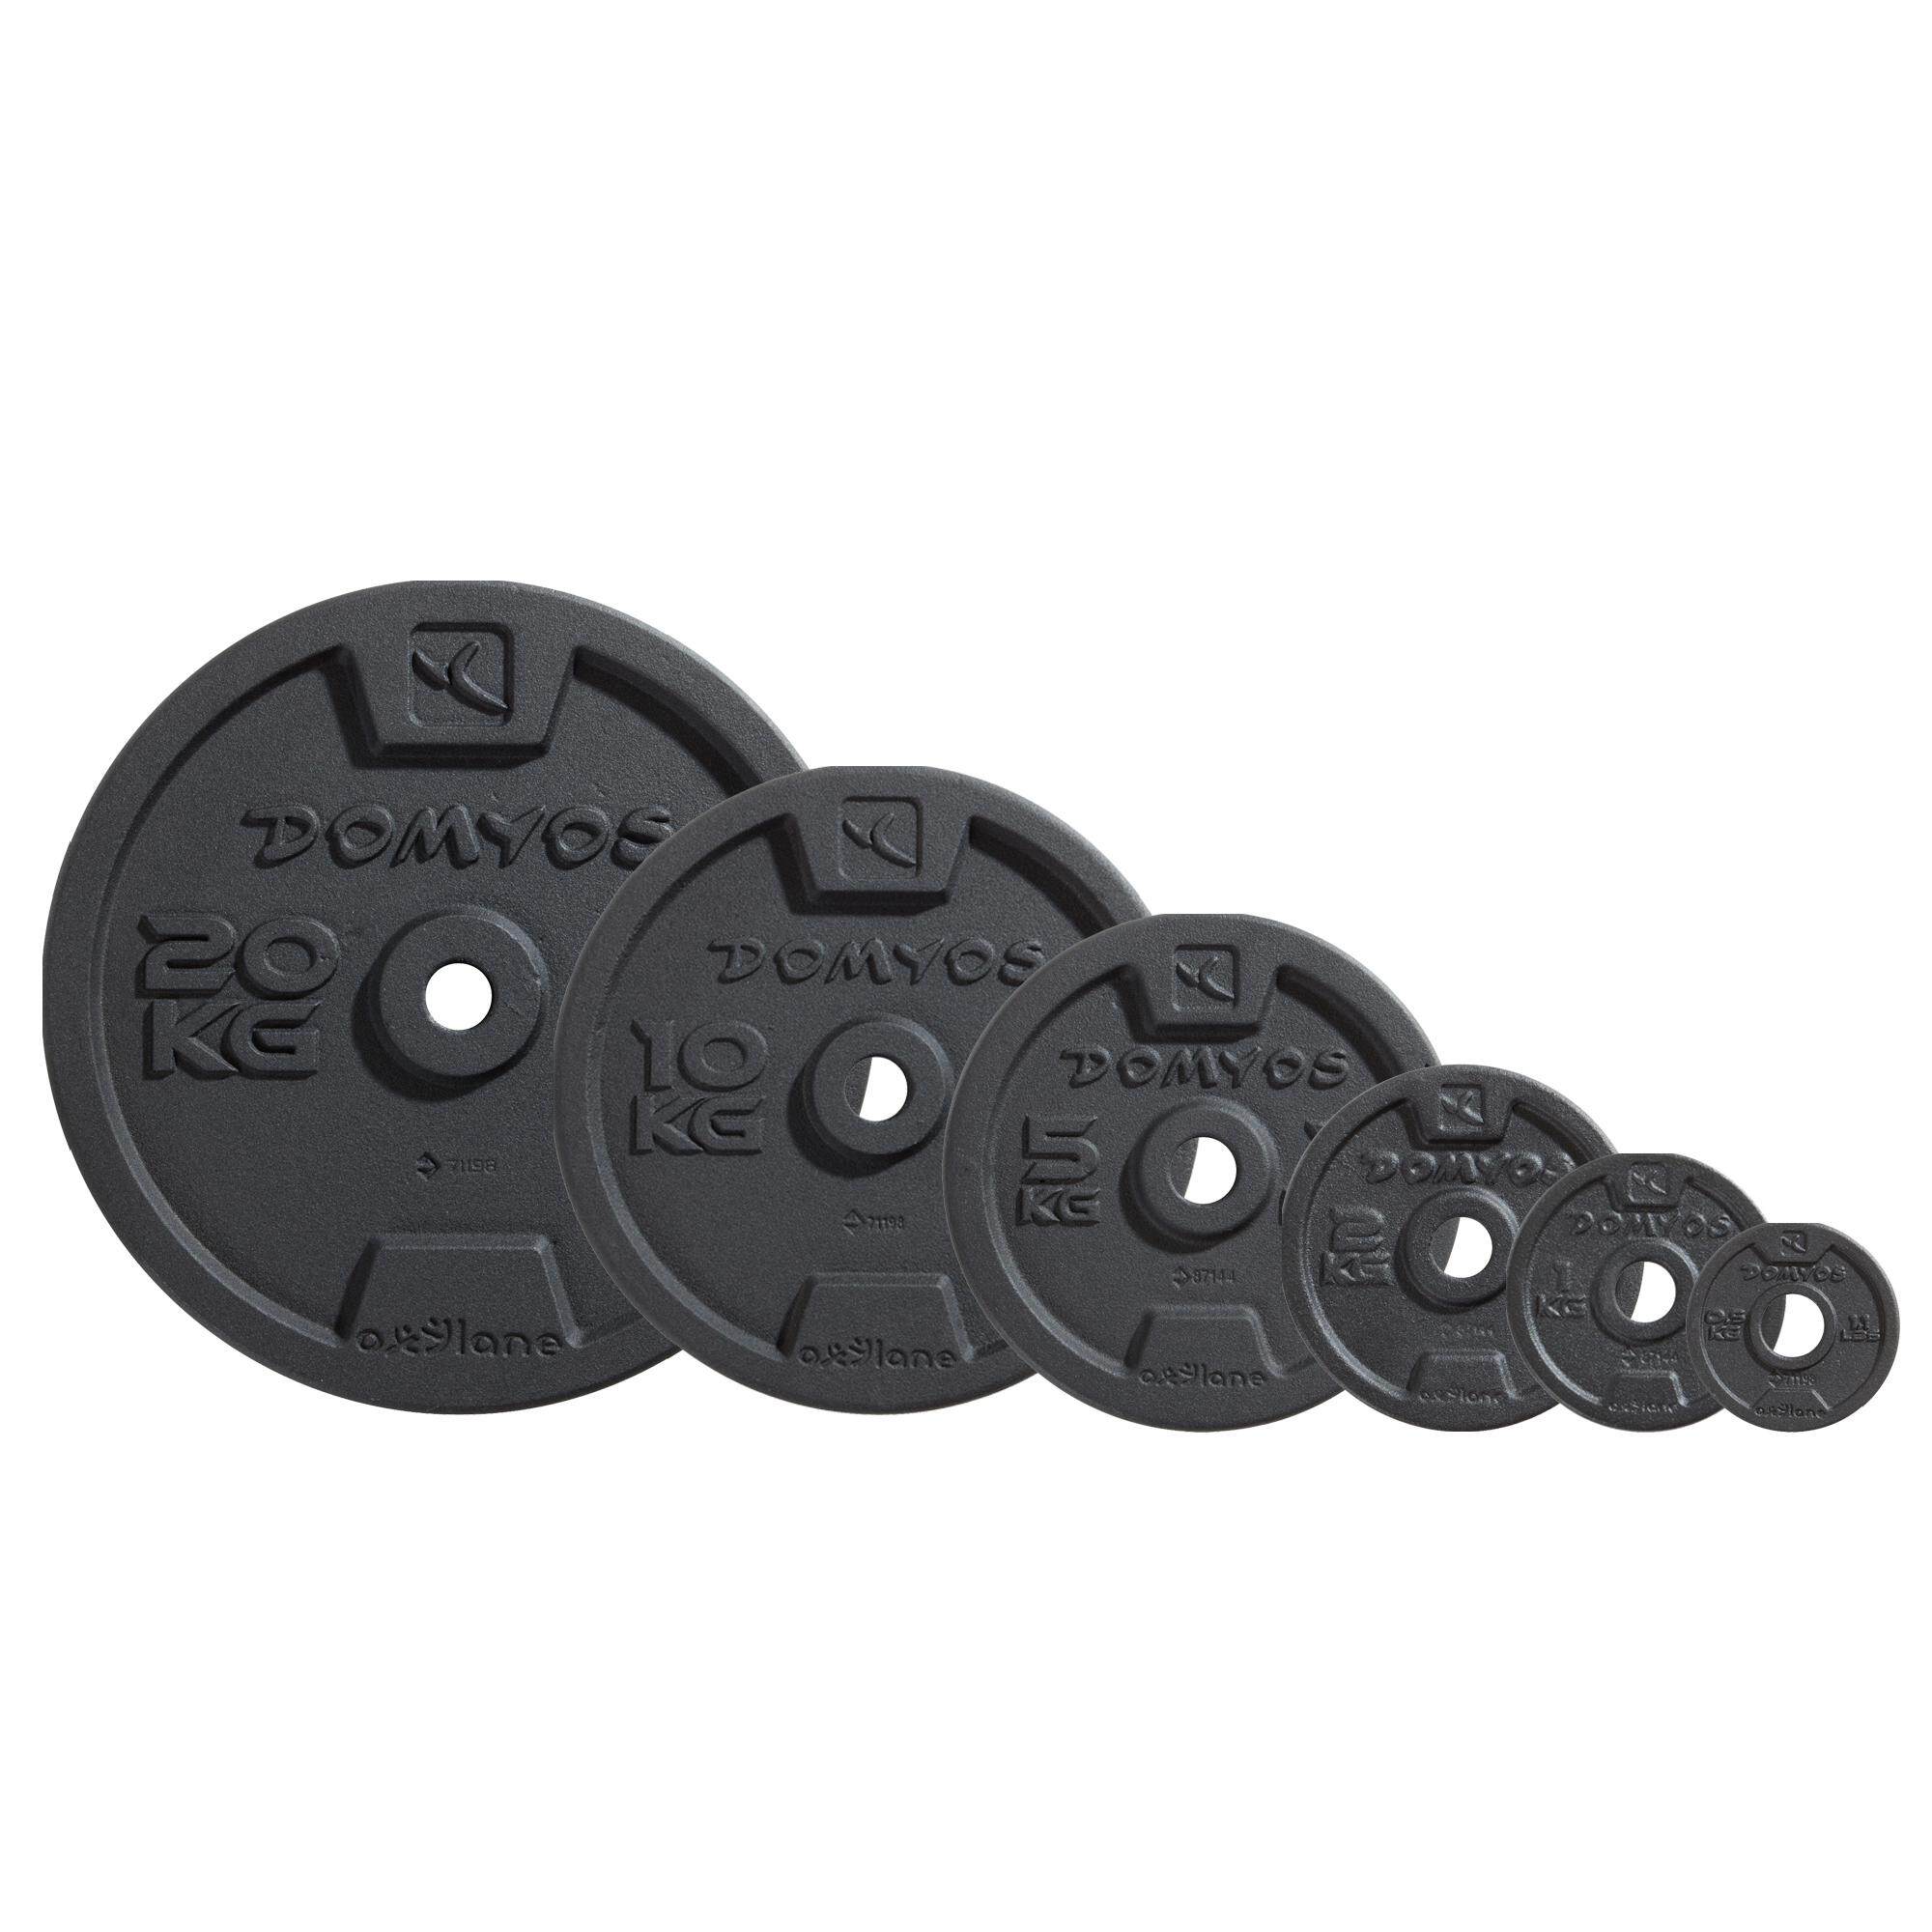 [ส่งฟรี ] แผ่นน้ำหนัก ดัมเบล  บาร์เบล เวทเหล็กหล่อแผ่นกลม 28 มม. 1 kg x 1 pcs Cast Iron Weight Training Disc Weight 28mm 1 kgx 1 pcs  Weight training Equipment Dumbbell BarBell Set ชุดยกน้ำหนัก ยกน้ำหนักเหล็ก ดัมเบล